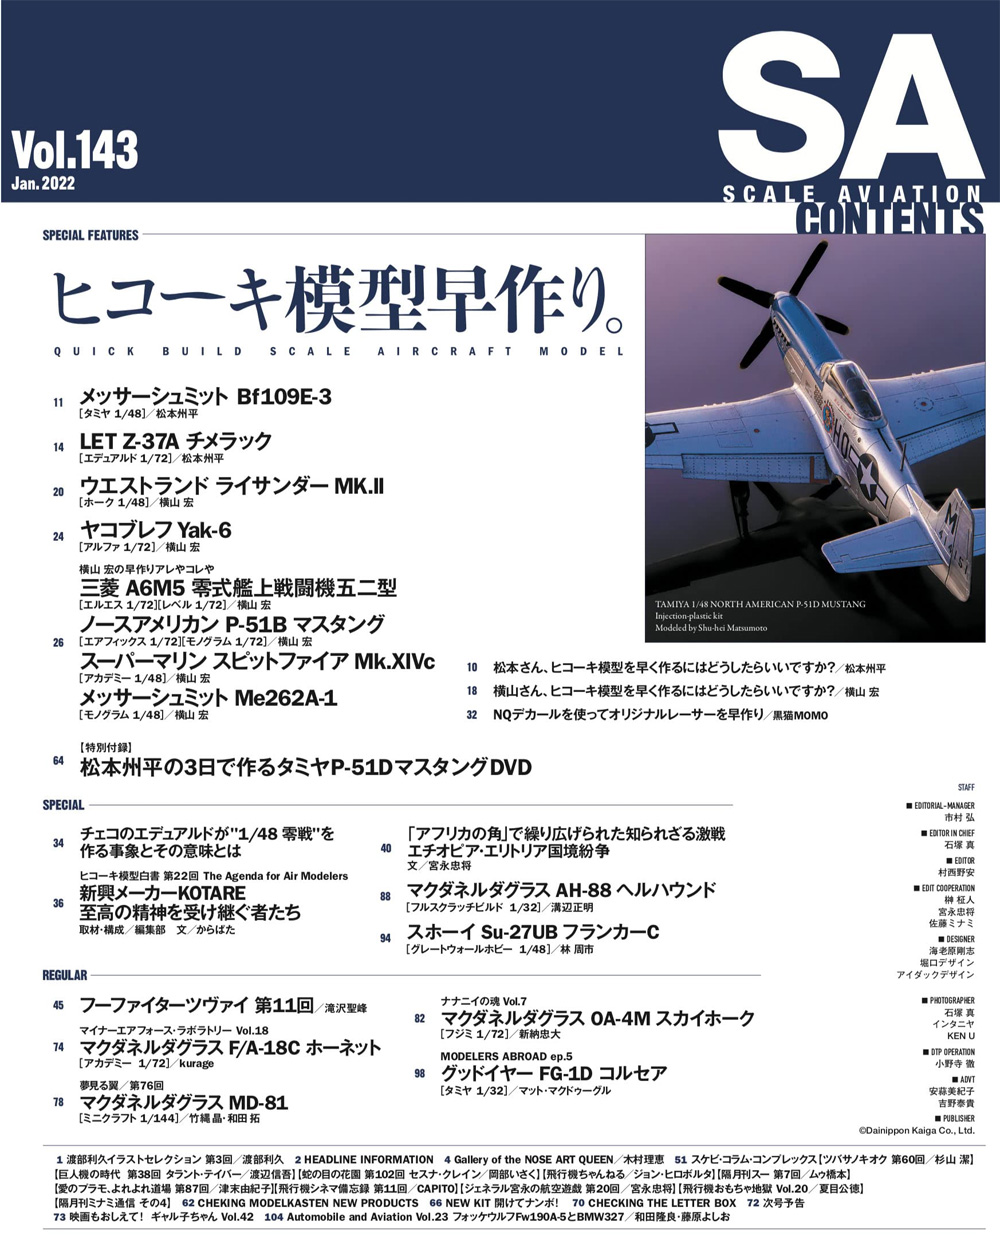 スケール アヴィエーション 2022年1月号 Vol.143 特別付録 DVD 雑誌 (大日本絵画 Scale Aviation No.Vol.143) 商品画像_1